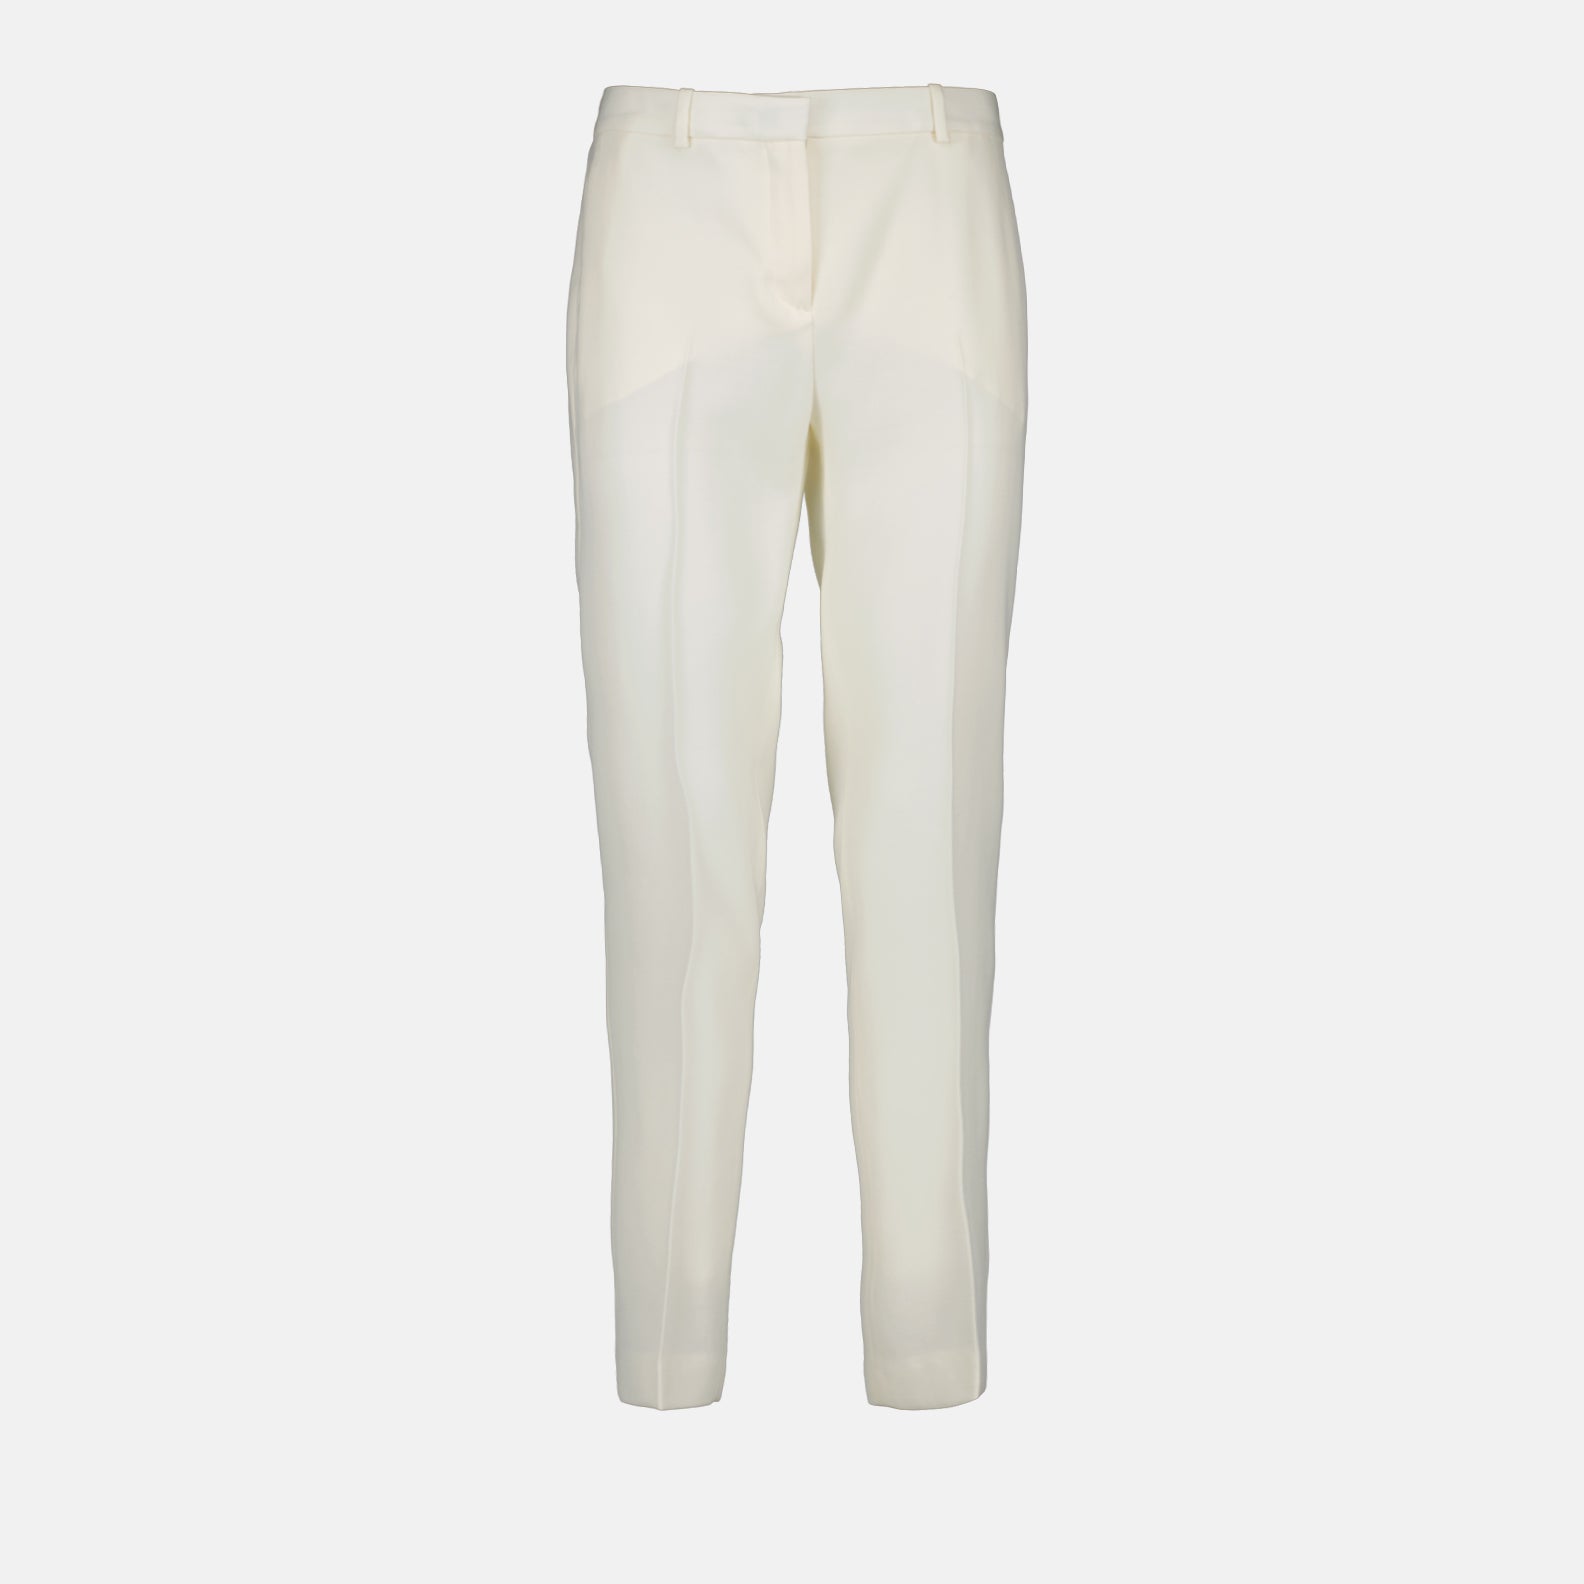 Pantalon droit blanc